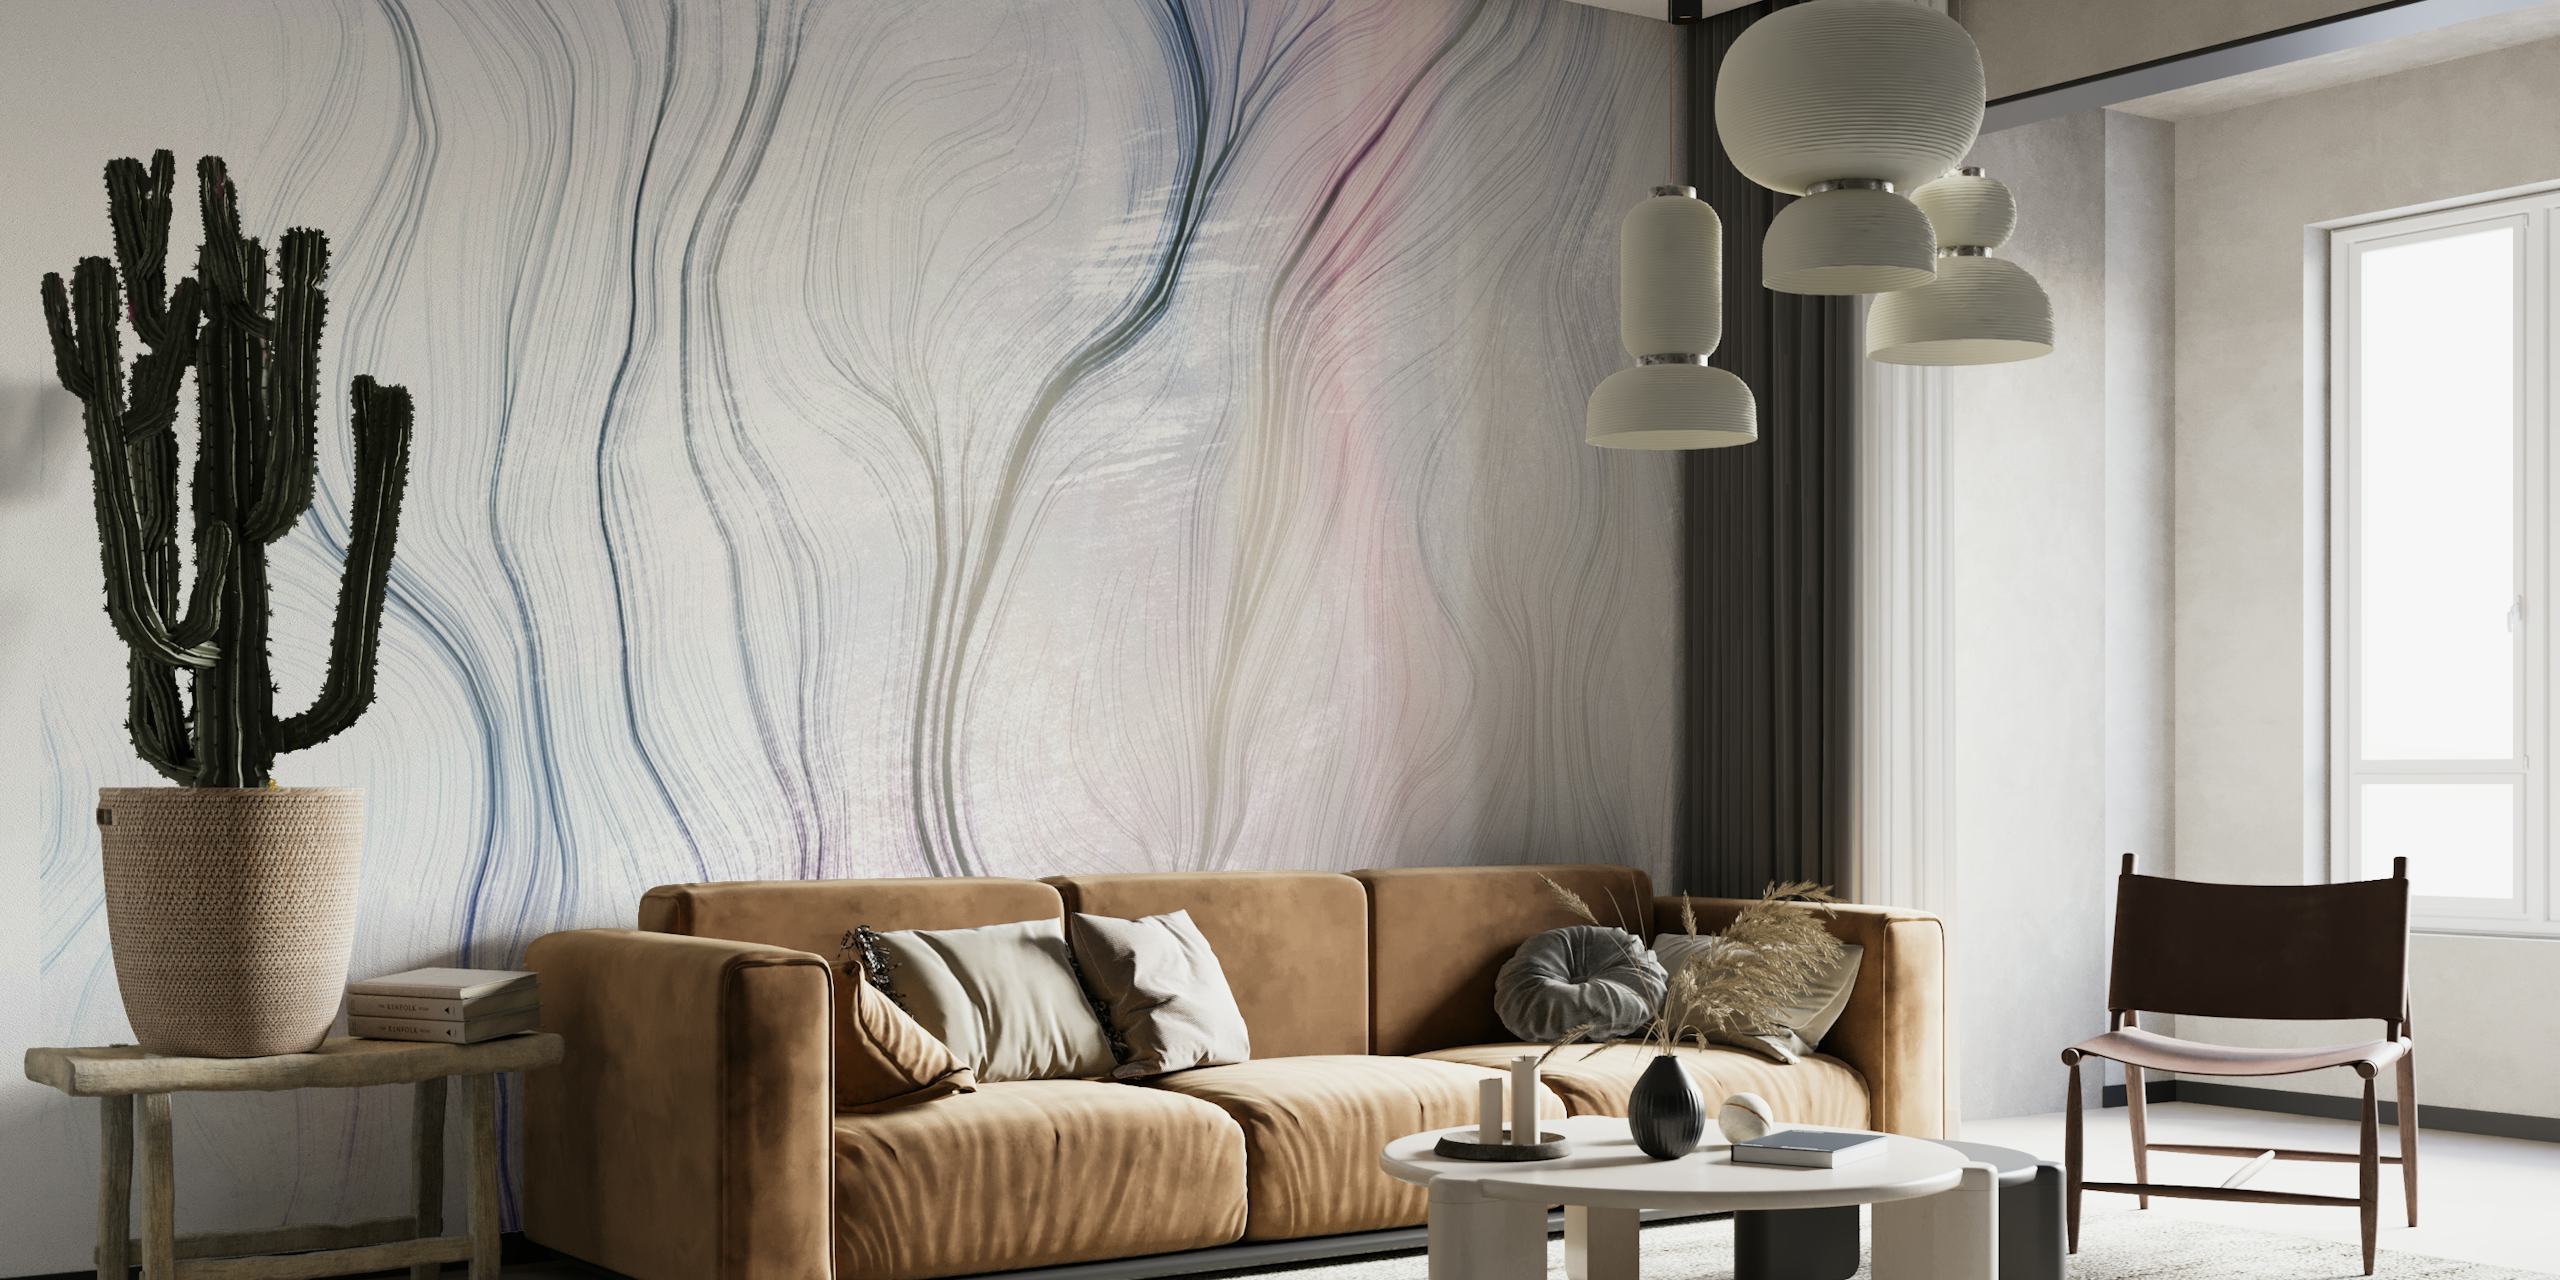 Fotomural de líneas abstractas en colores pastel 'Path 1' para una decoración serena de la habitación.